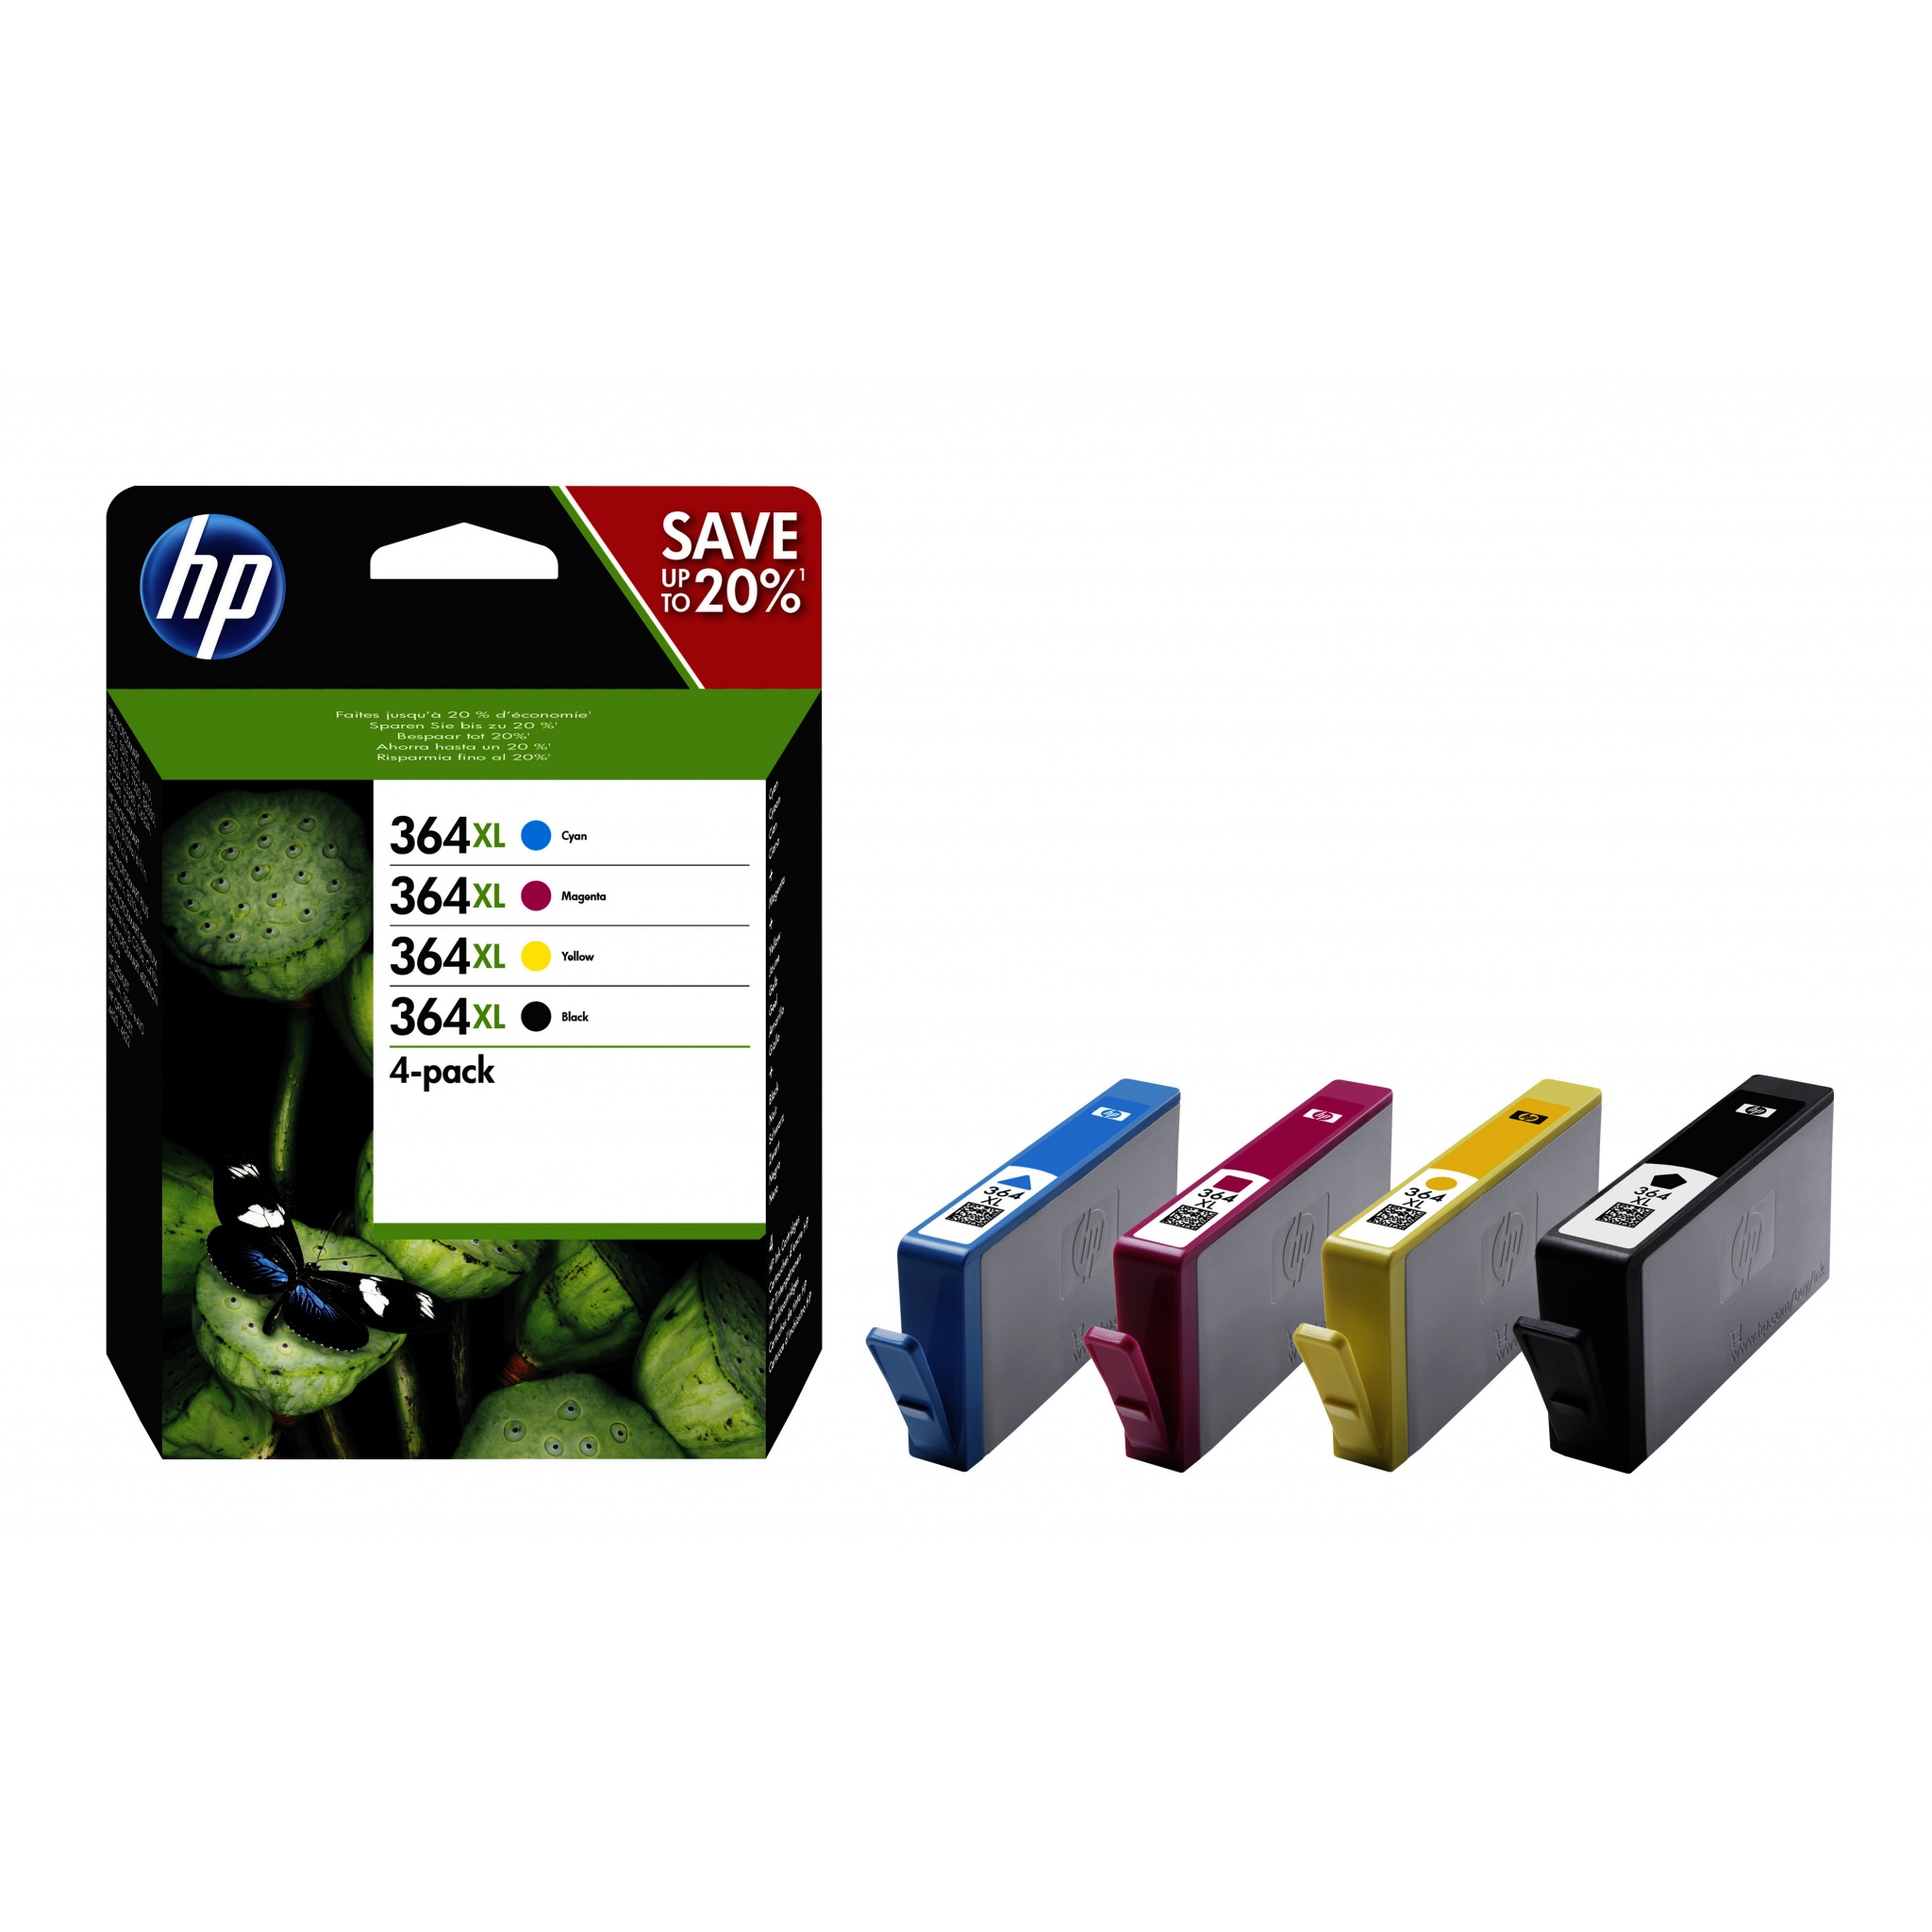 Verwoesten oriëntatie toilet HP 364XL Multi-pack Ink Cartridges (Black, Cyan, Magenta, Yellow)